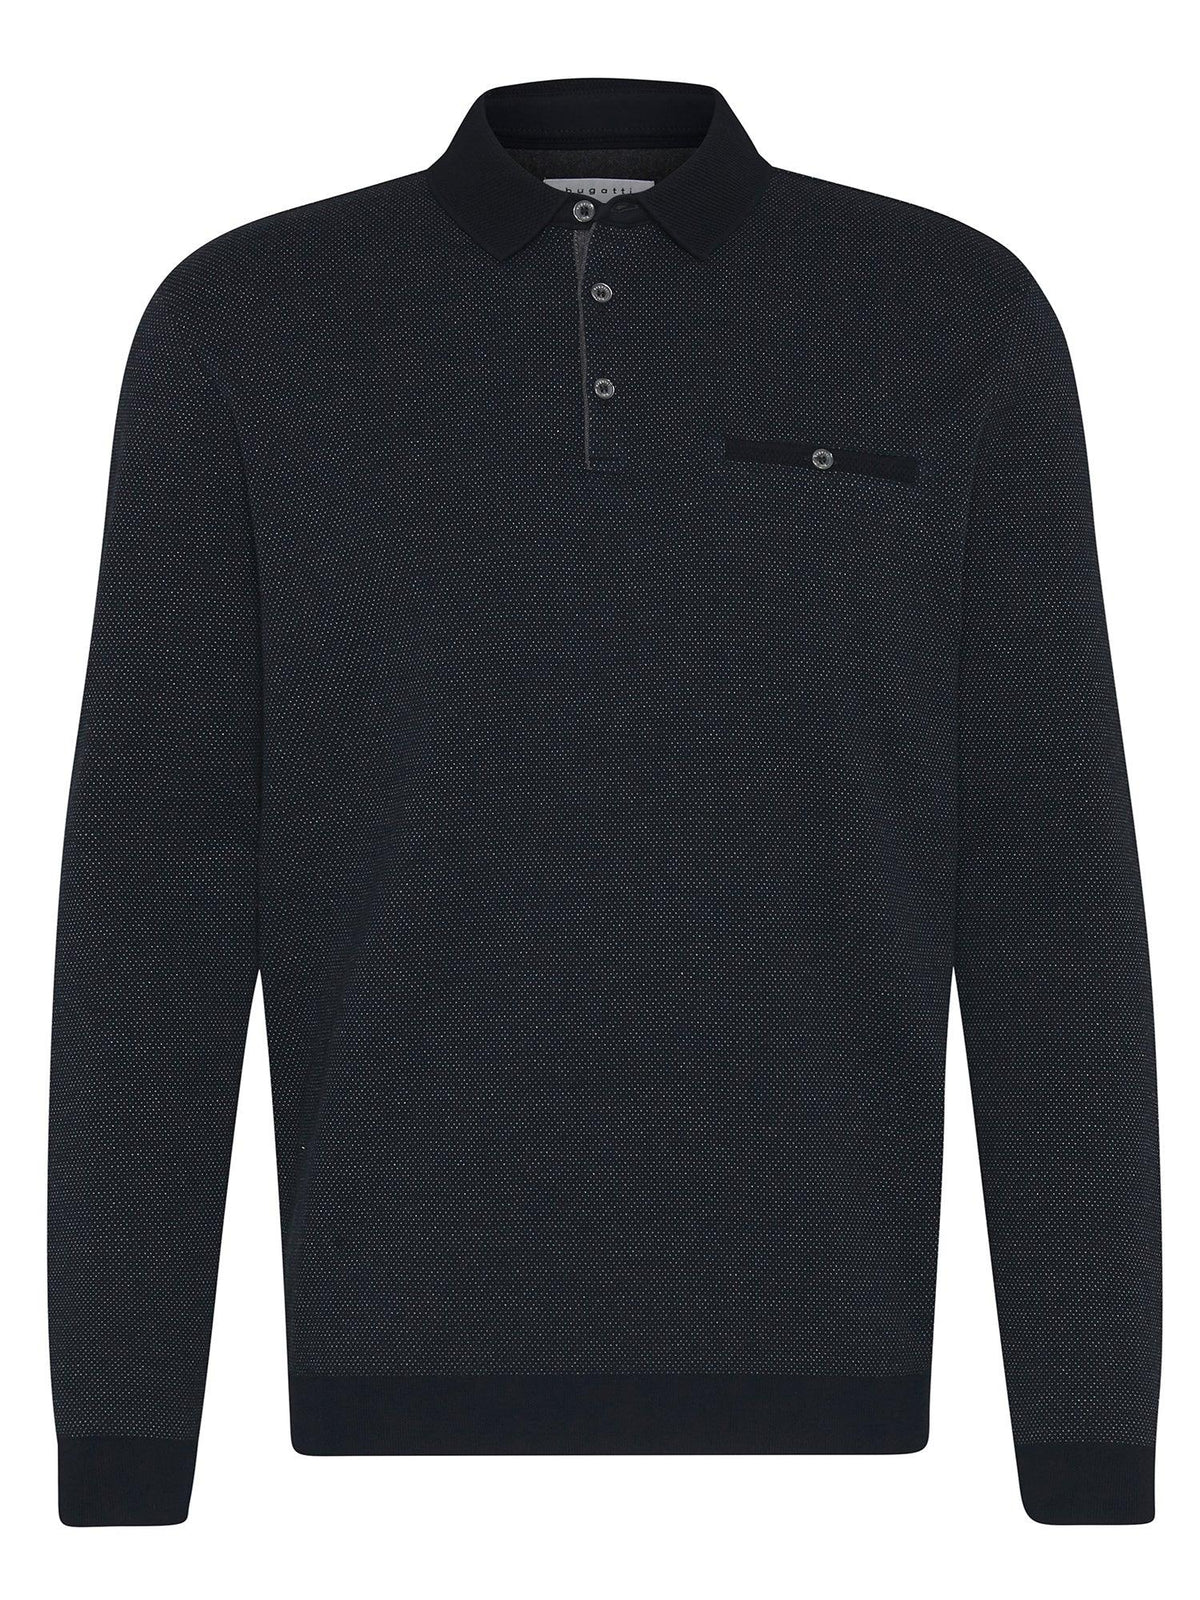 8131- Polo T'shirt L/S - Harrys for Menswear